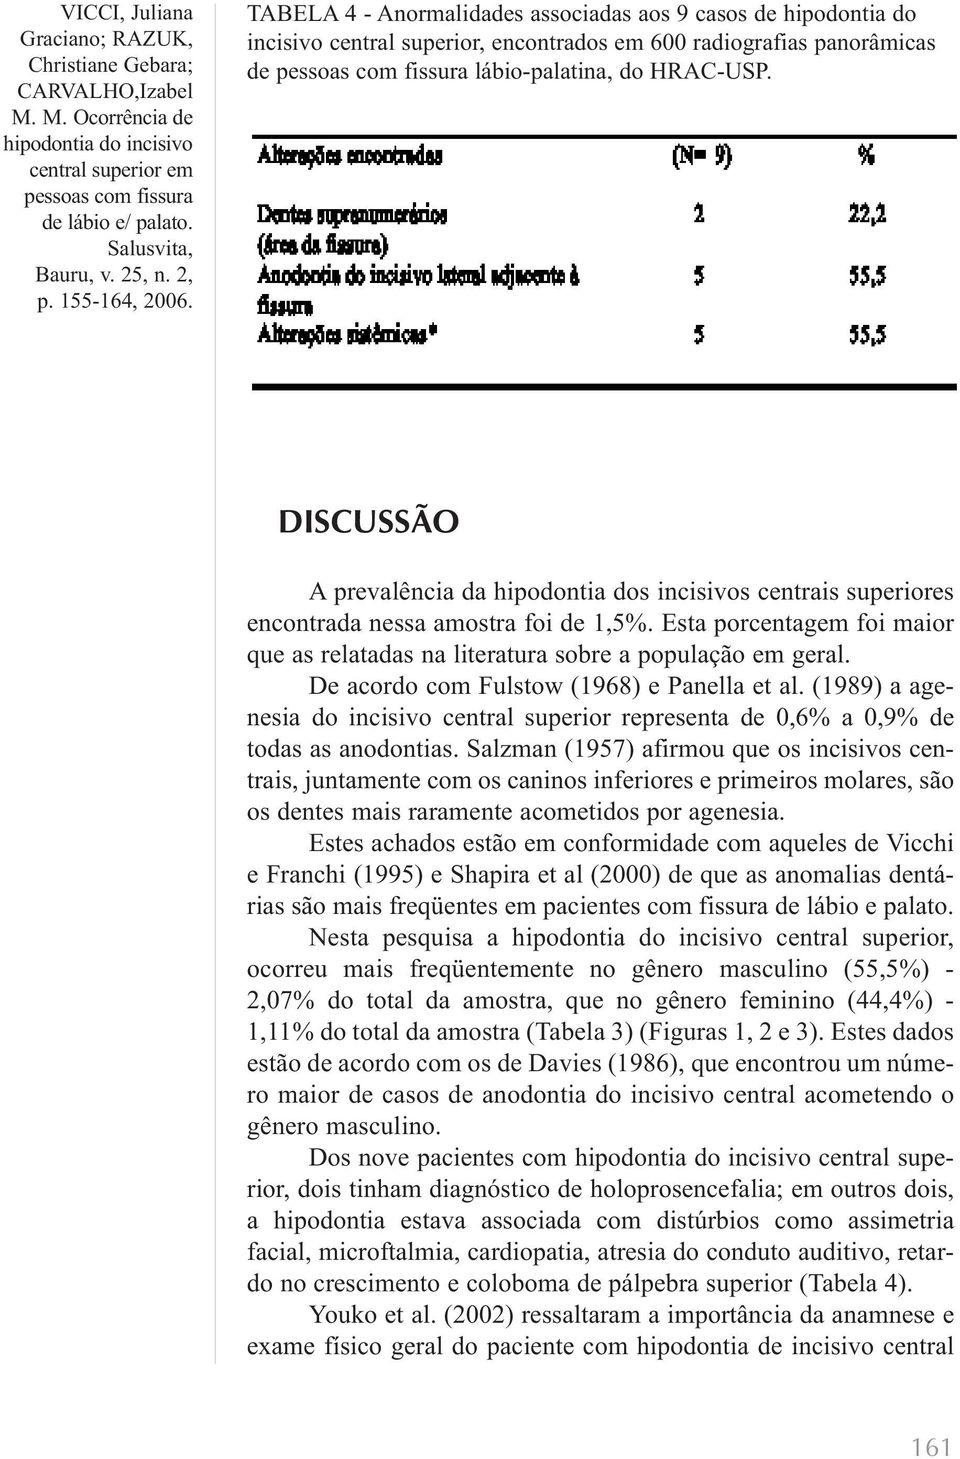 De acordo com Fulstow (1968) e Panella et al. (1989) a agenesia do incisivo central superior representa de 0,6% a 0,9% de todas as anodontias.